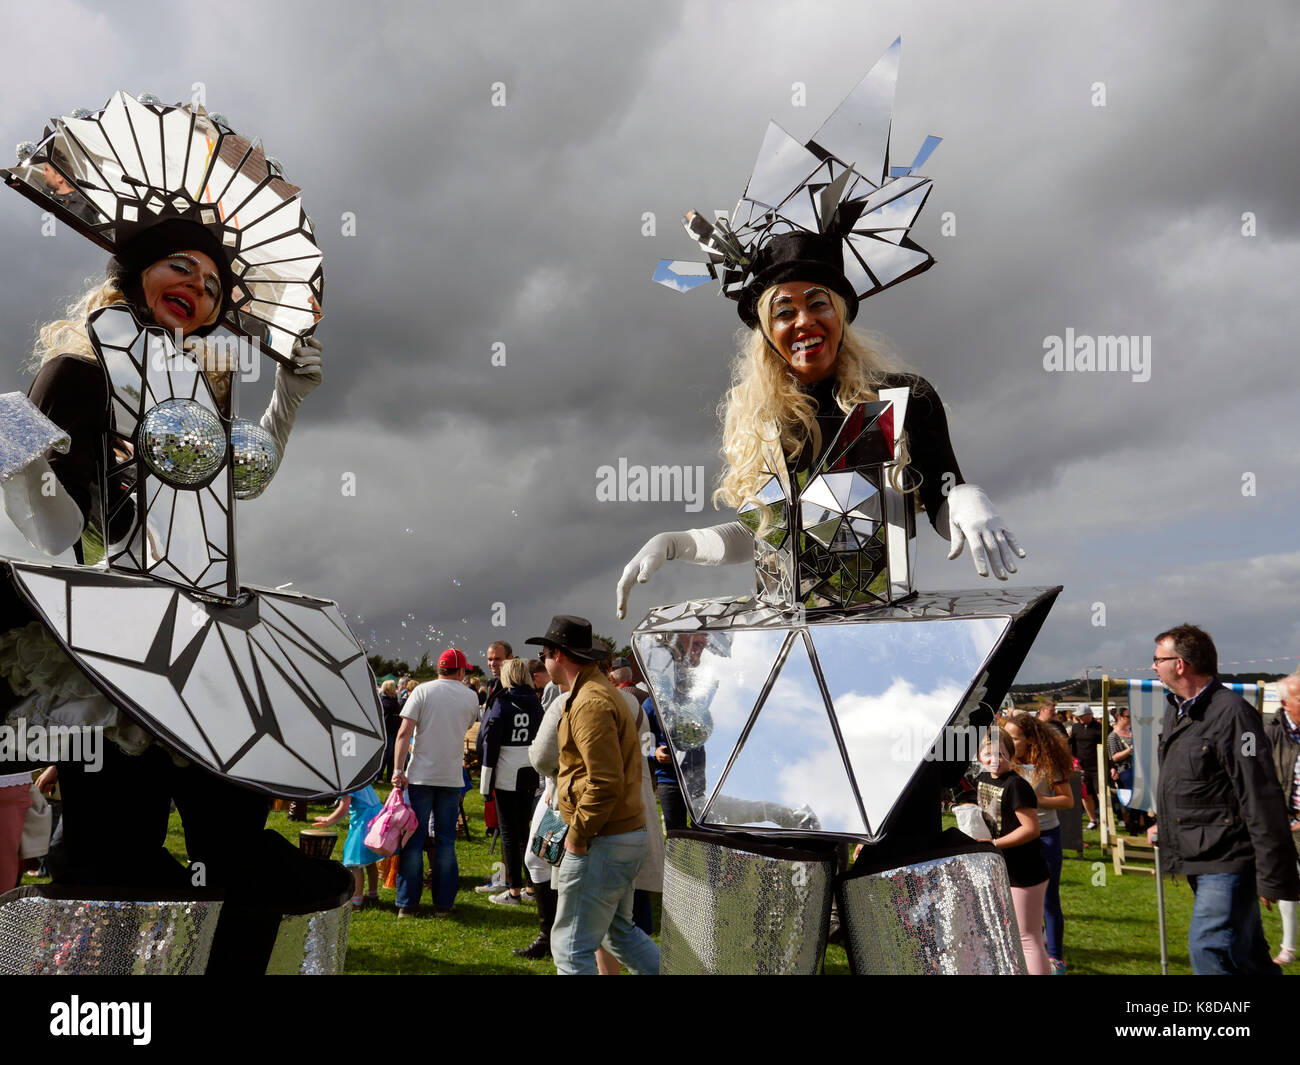 Deux personnes portant des costumes refelective barlow street défilé du carnaval dans le Derbyshire, Angleterre Banque D'Images